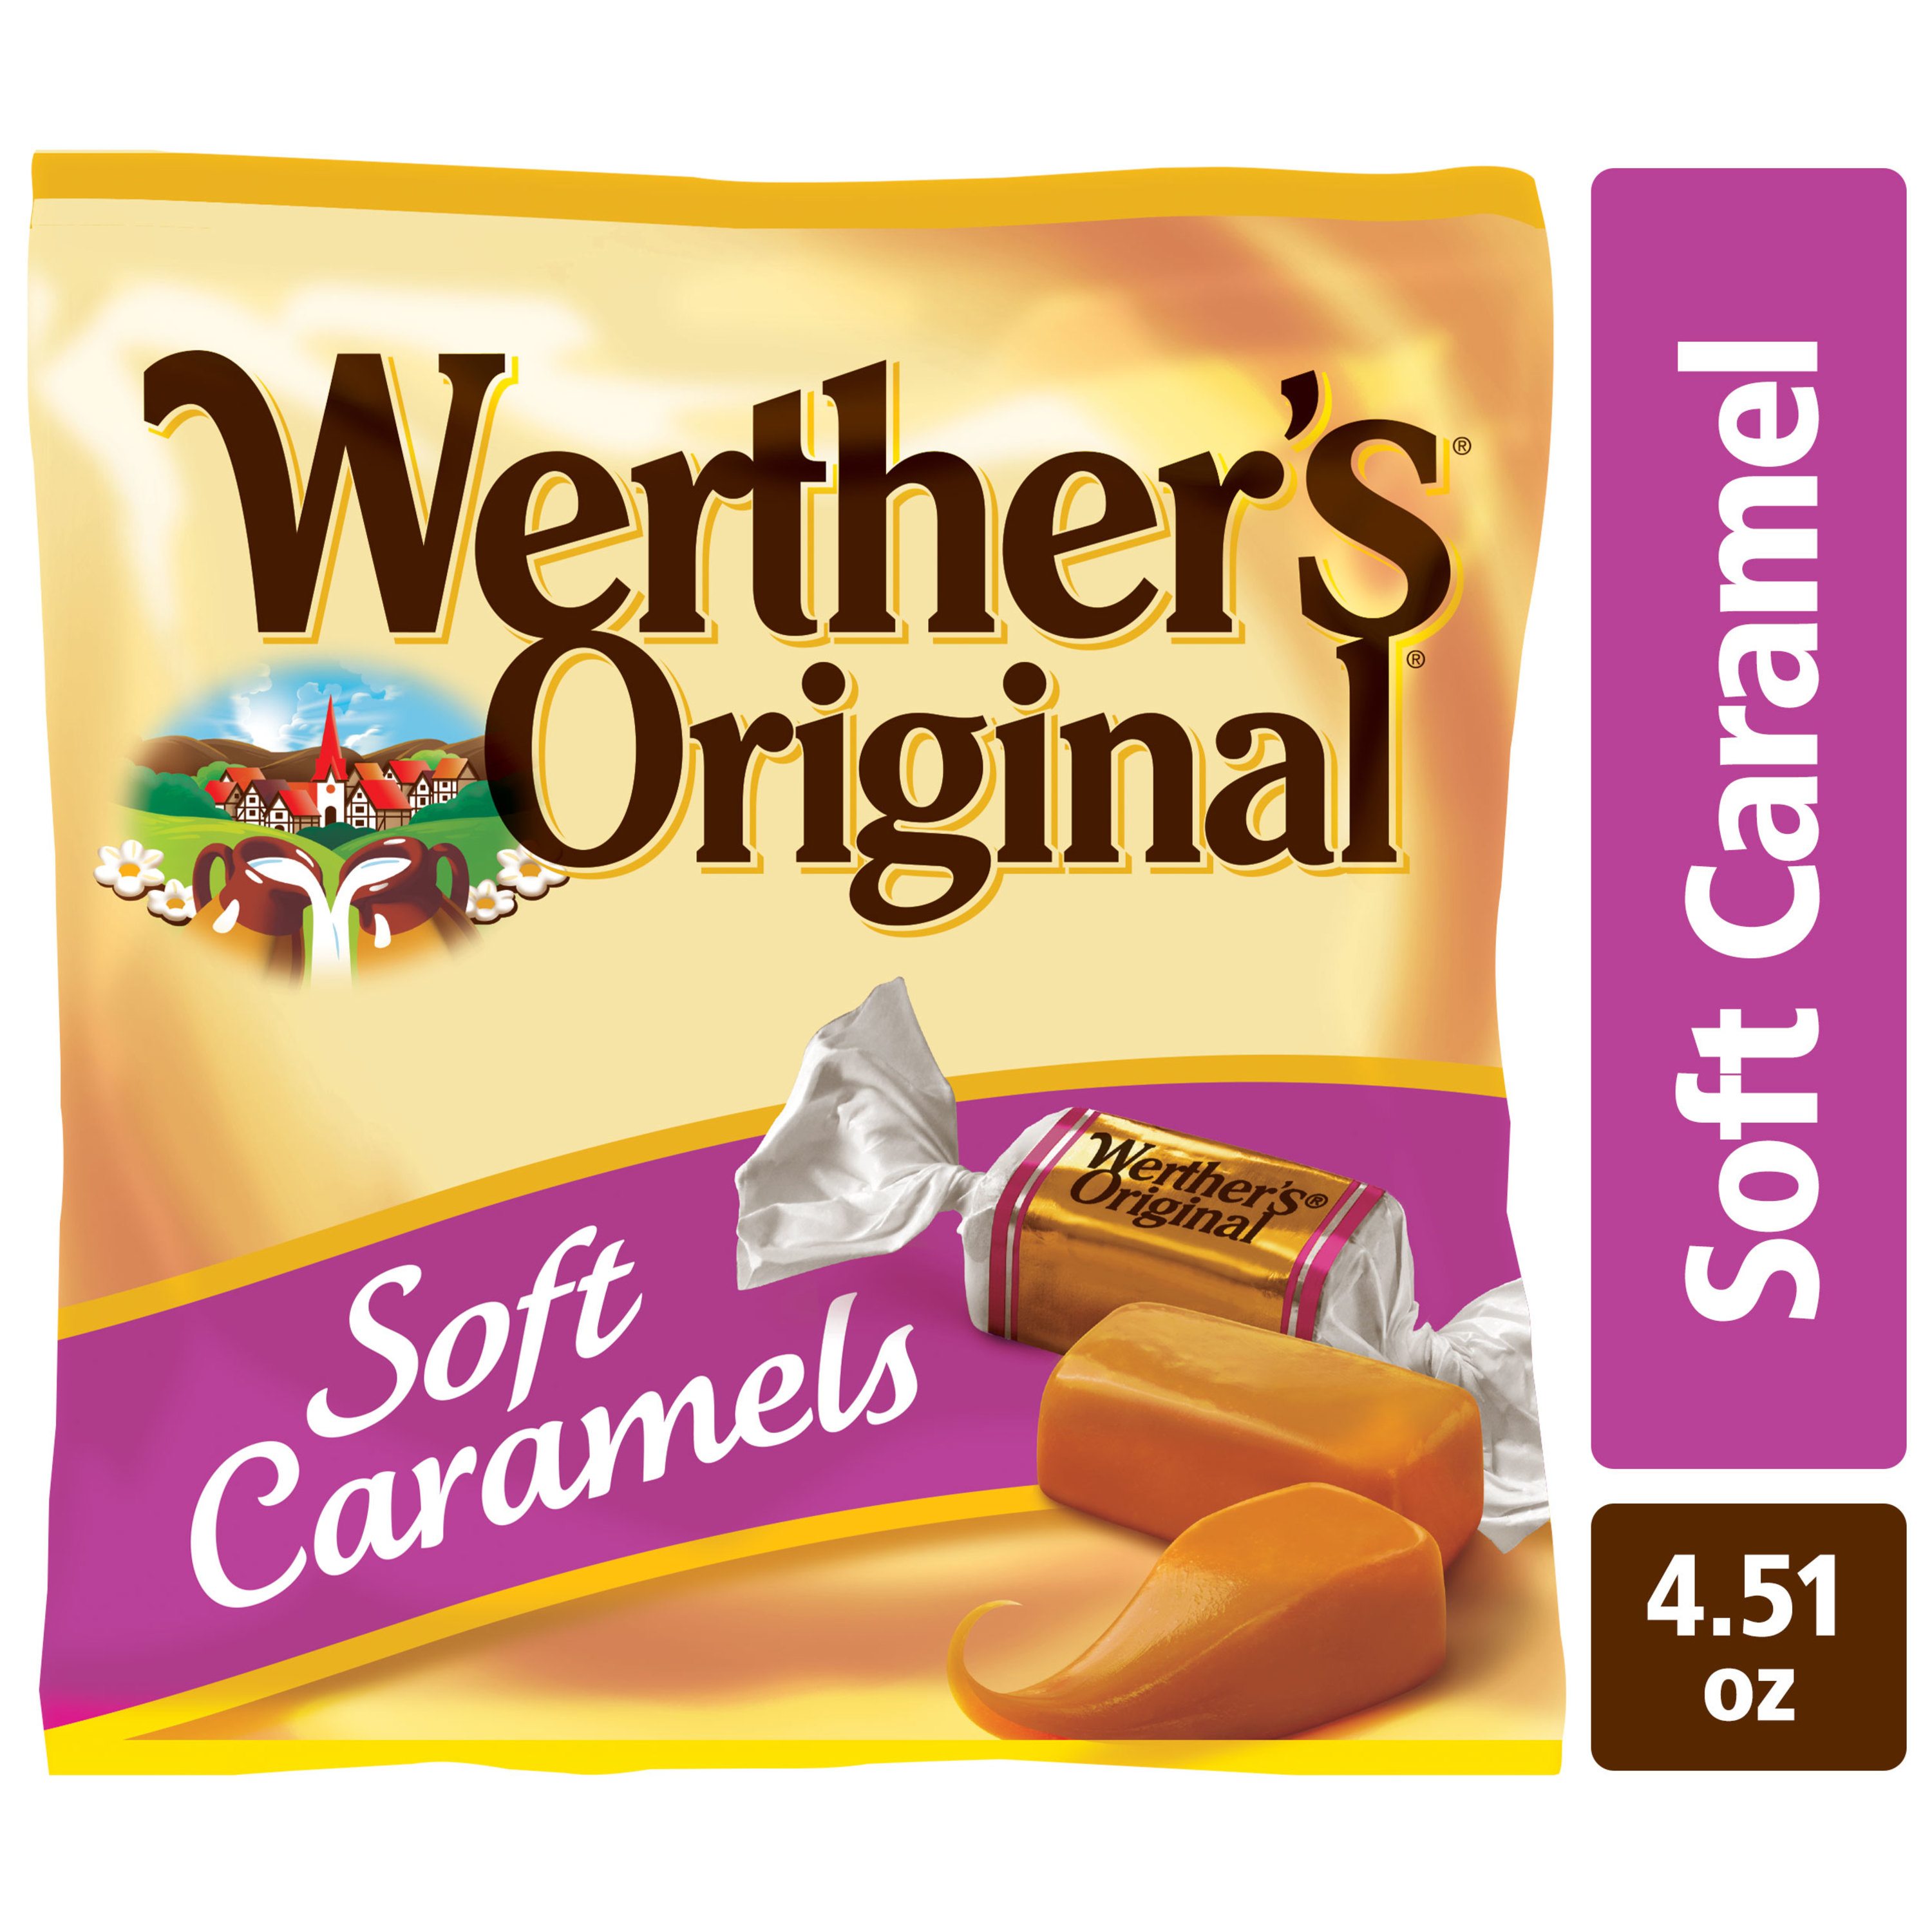 Storck Werther's Original Soft Caramels, 4.51 oz - image 1 of 6